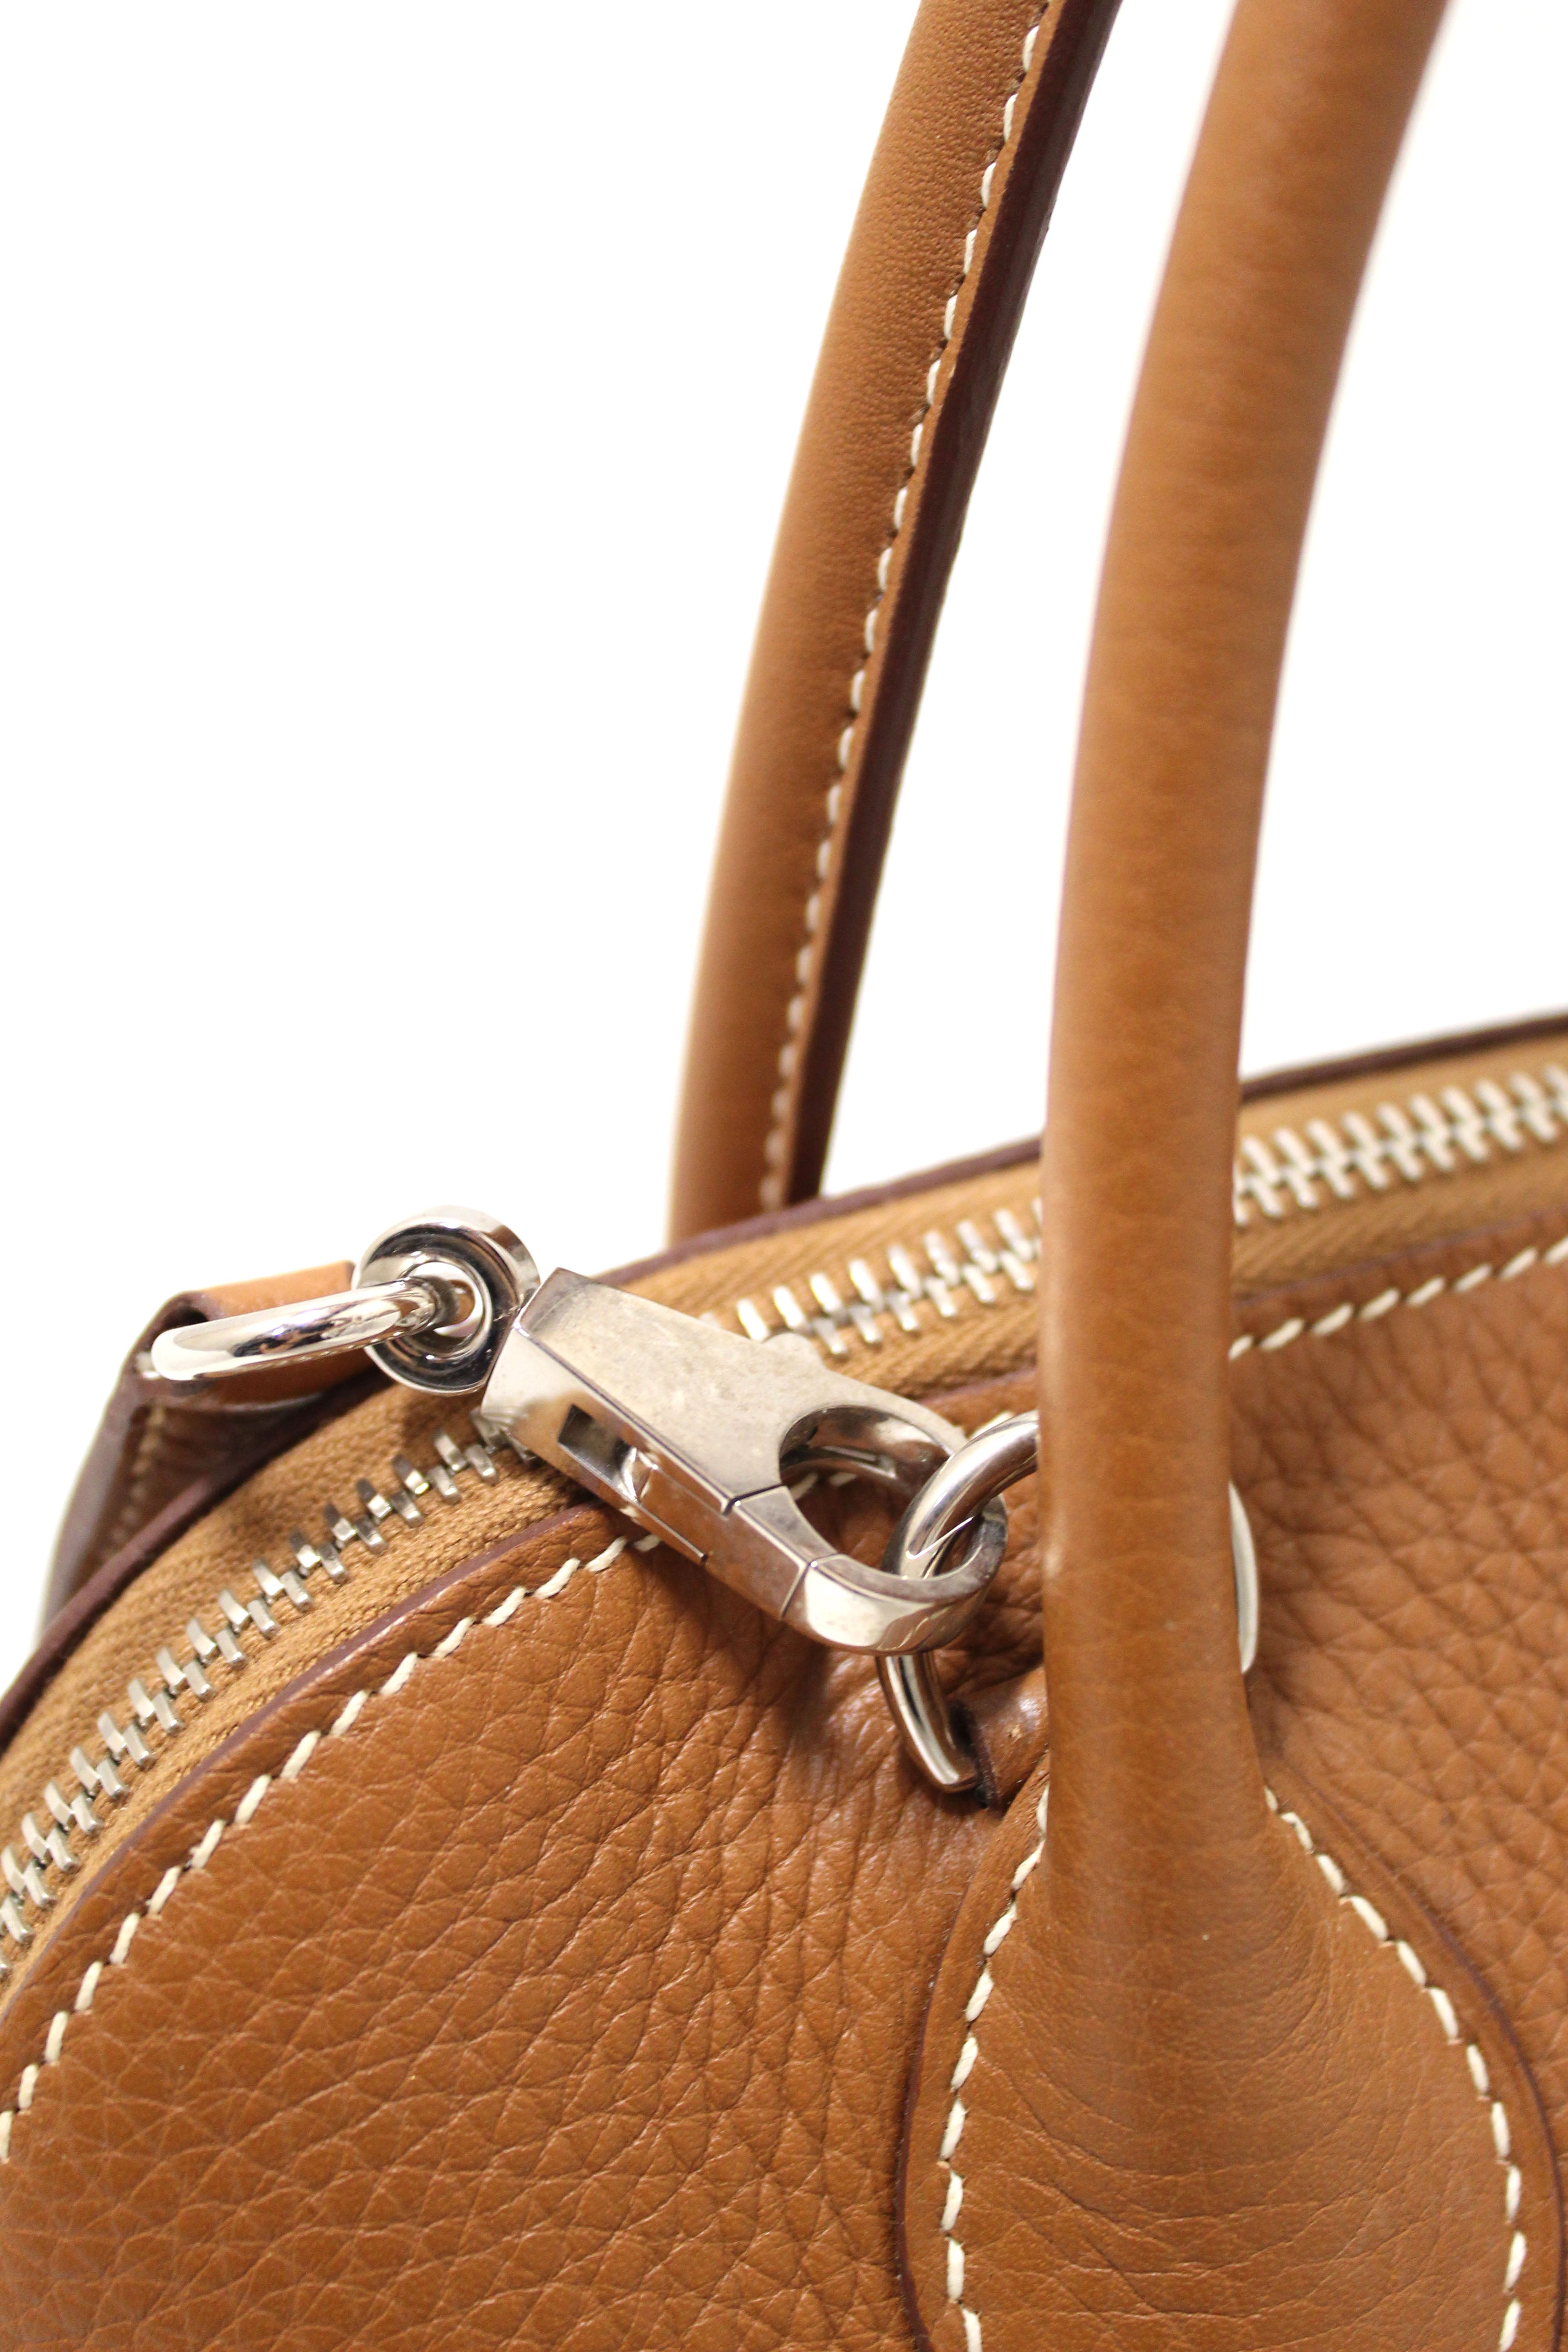 Authentic Hermes Brown Taurillon Clemence Bolide 31 Handbag/Shoulder Bag